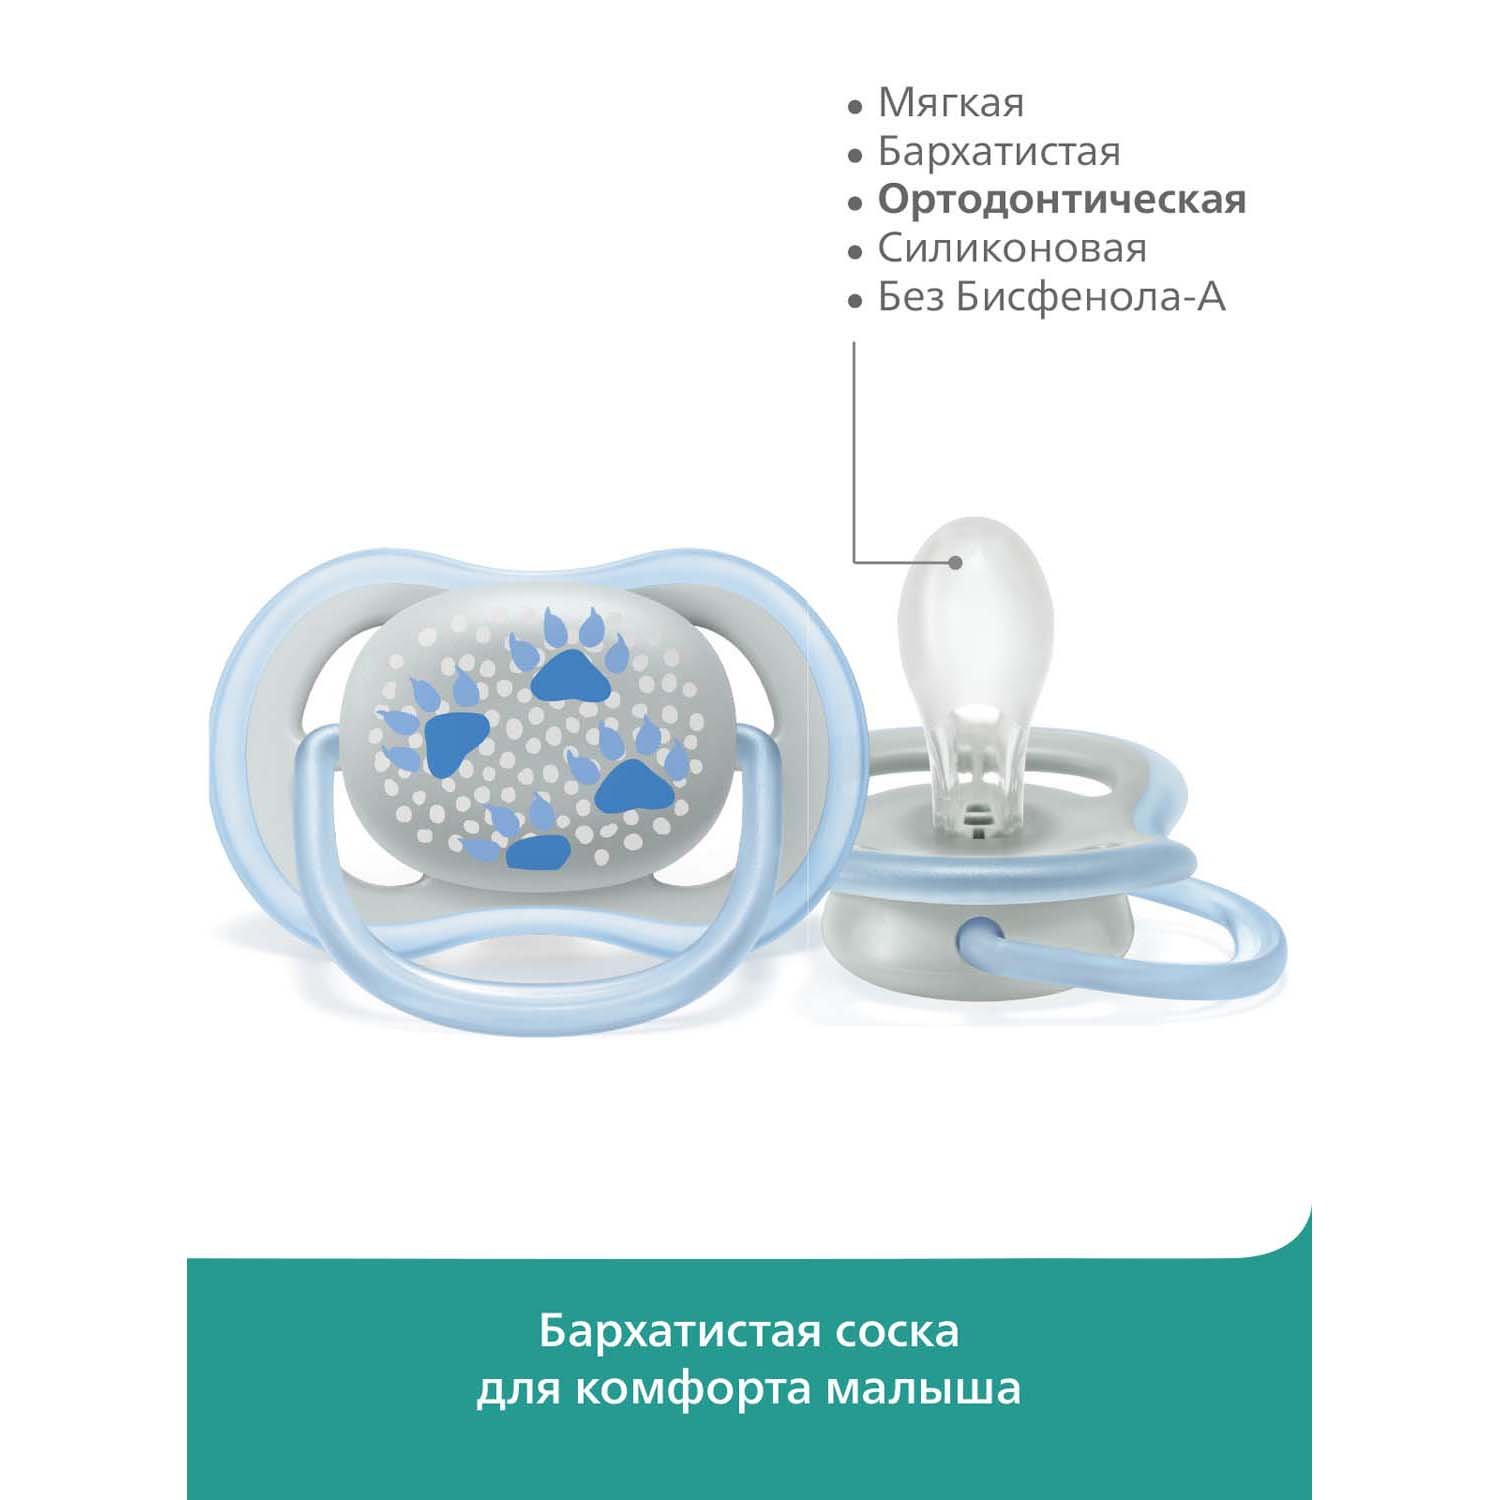 Пустышка Philips Avent ultra air с футляром для хранения и стерилизации 2шт 6-18 месяцев SCF085/03